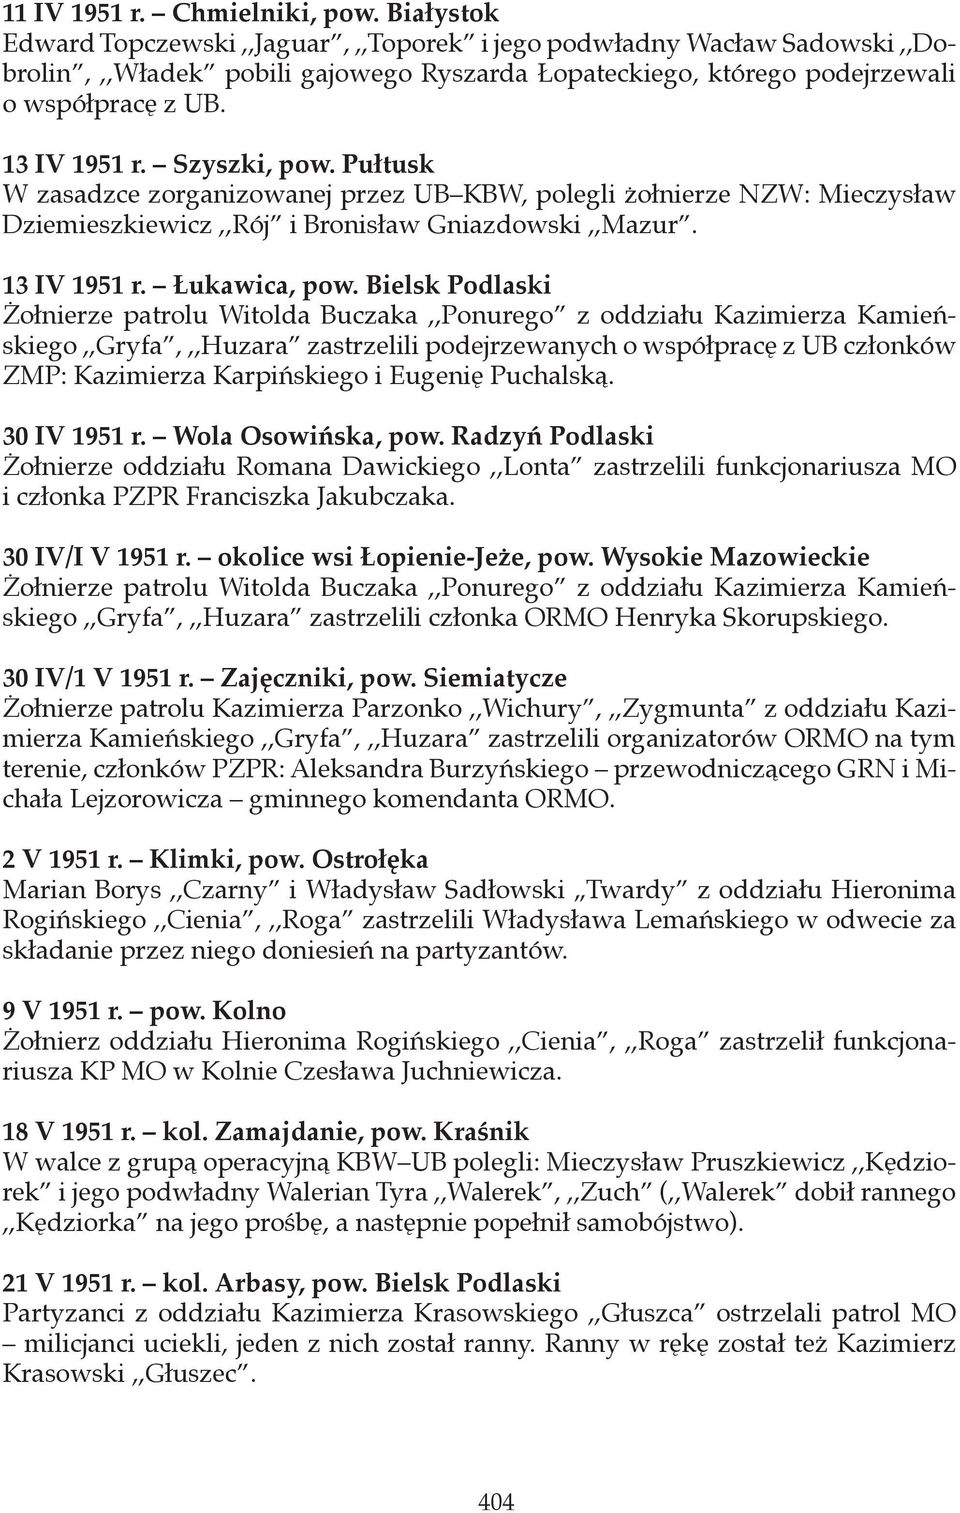 Szyszki, pow. Pułtusk W zasadzce zorganizowanej przez UB KBW, polegli żołnierze NZW: Mieczysław Dziemieszkiewicz,,Rój i Bronisław Gniazdowski,,Mazur. 13 IV 1951 r. Łukawica, pow.